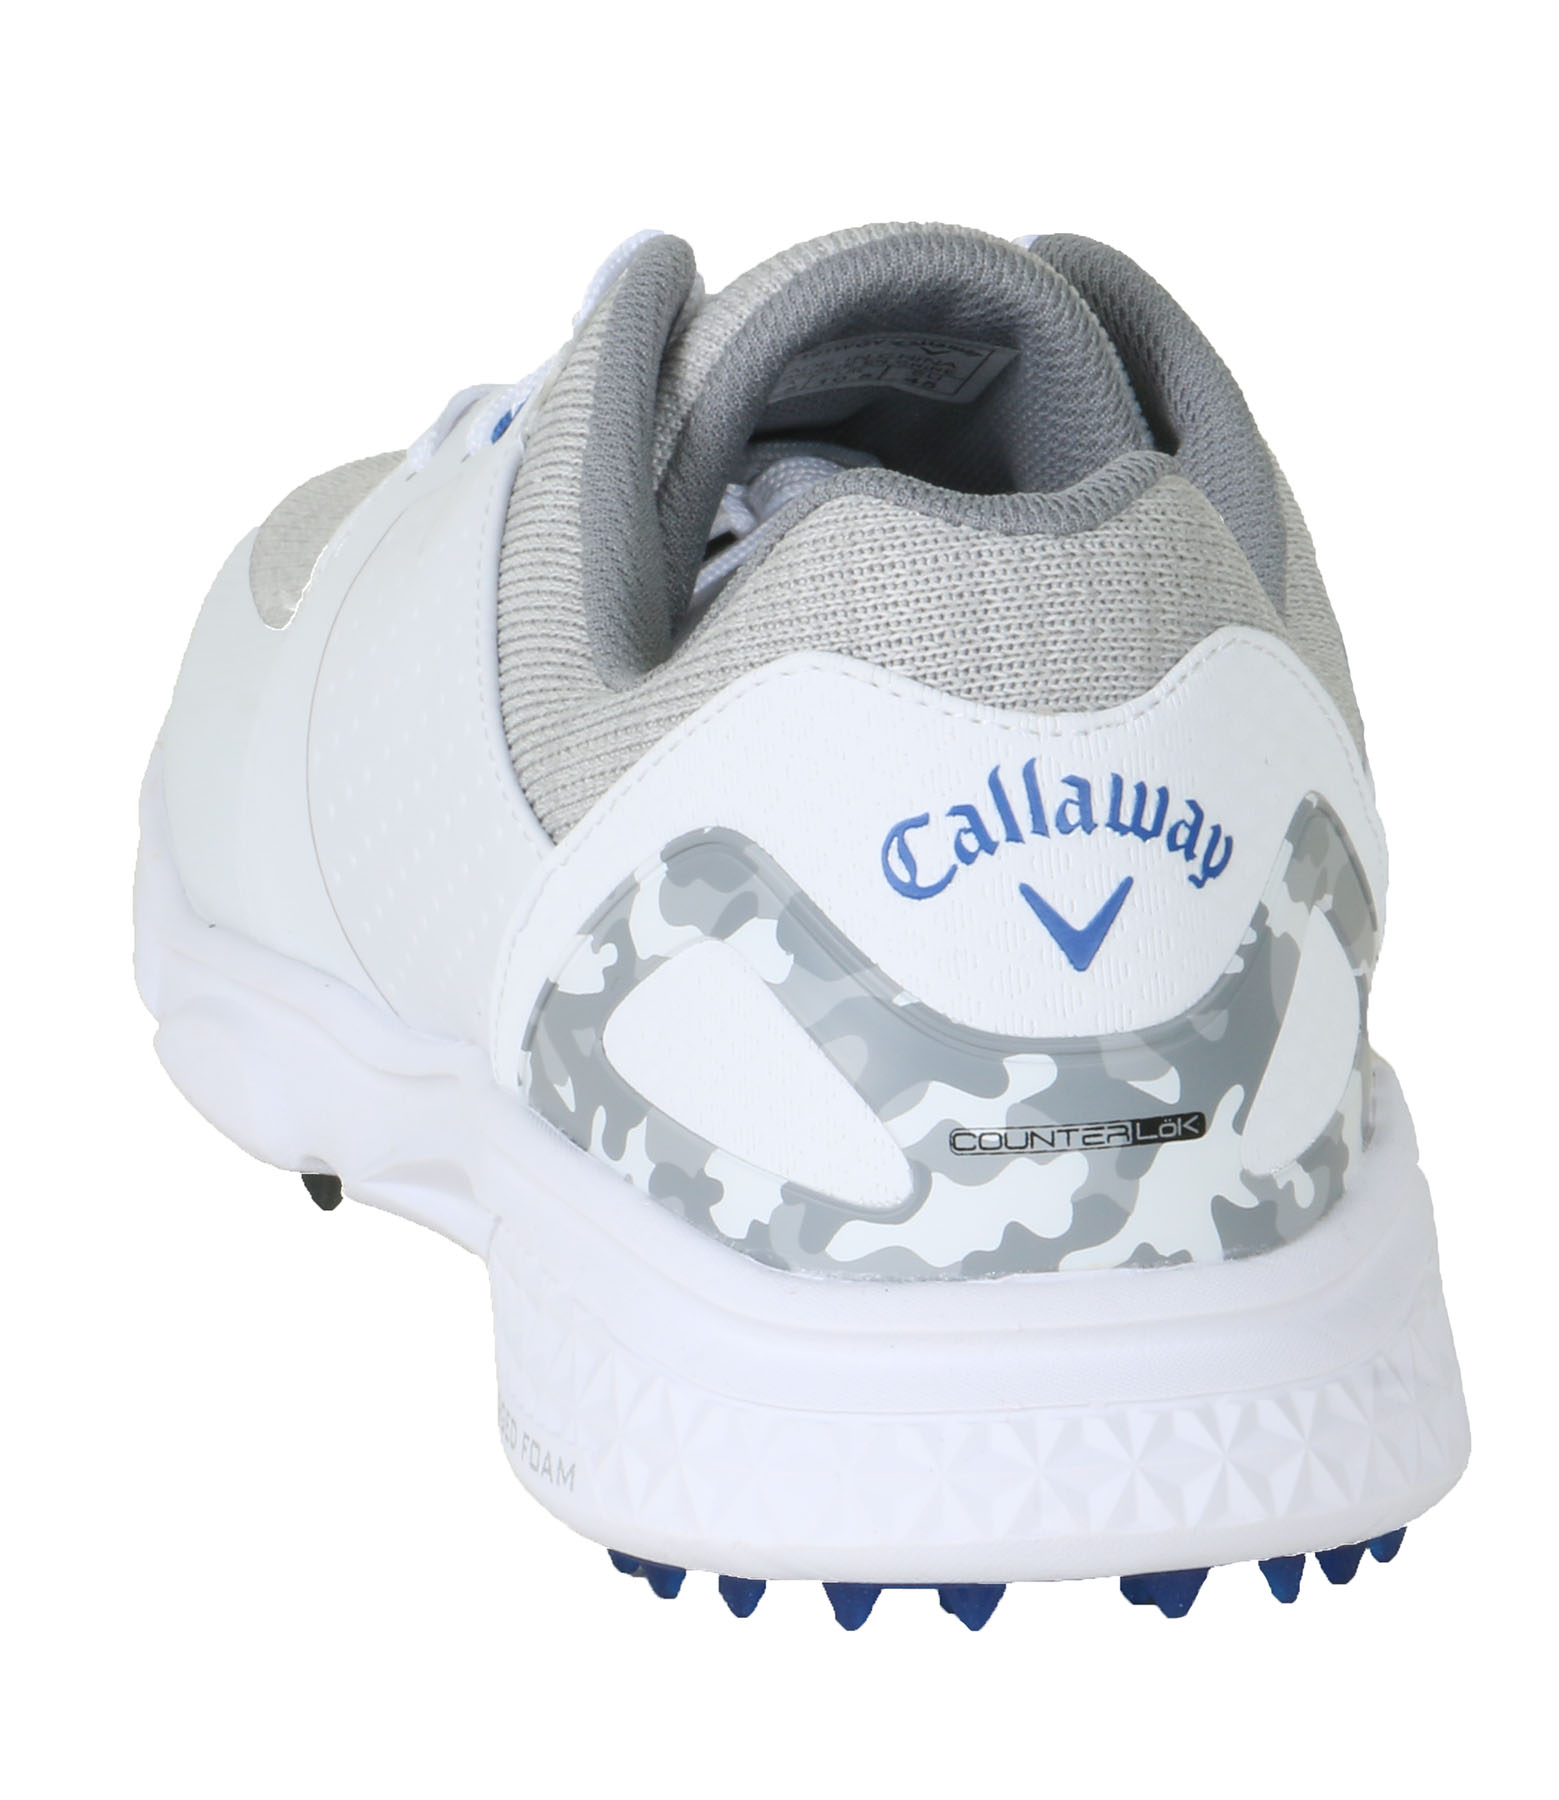 Callaway Men's Coronado V2 SL Golf Shoes